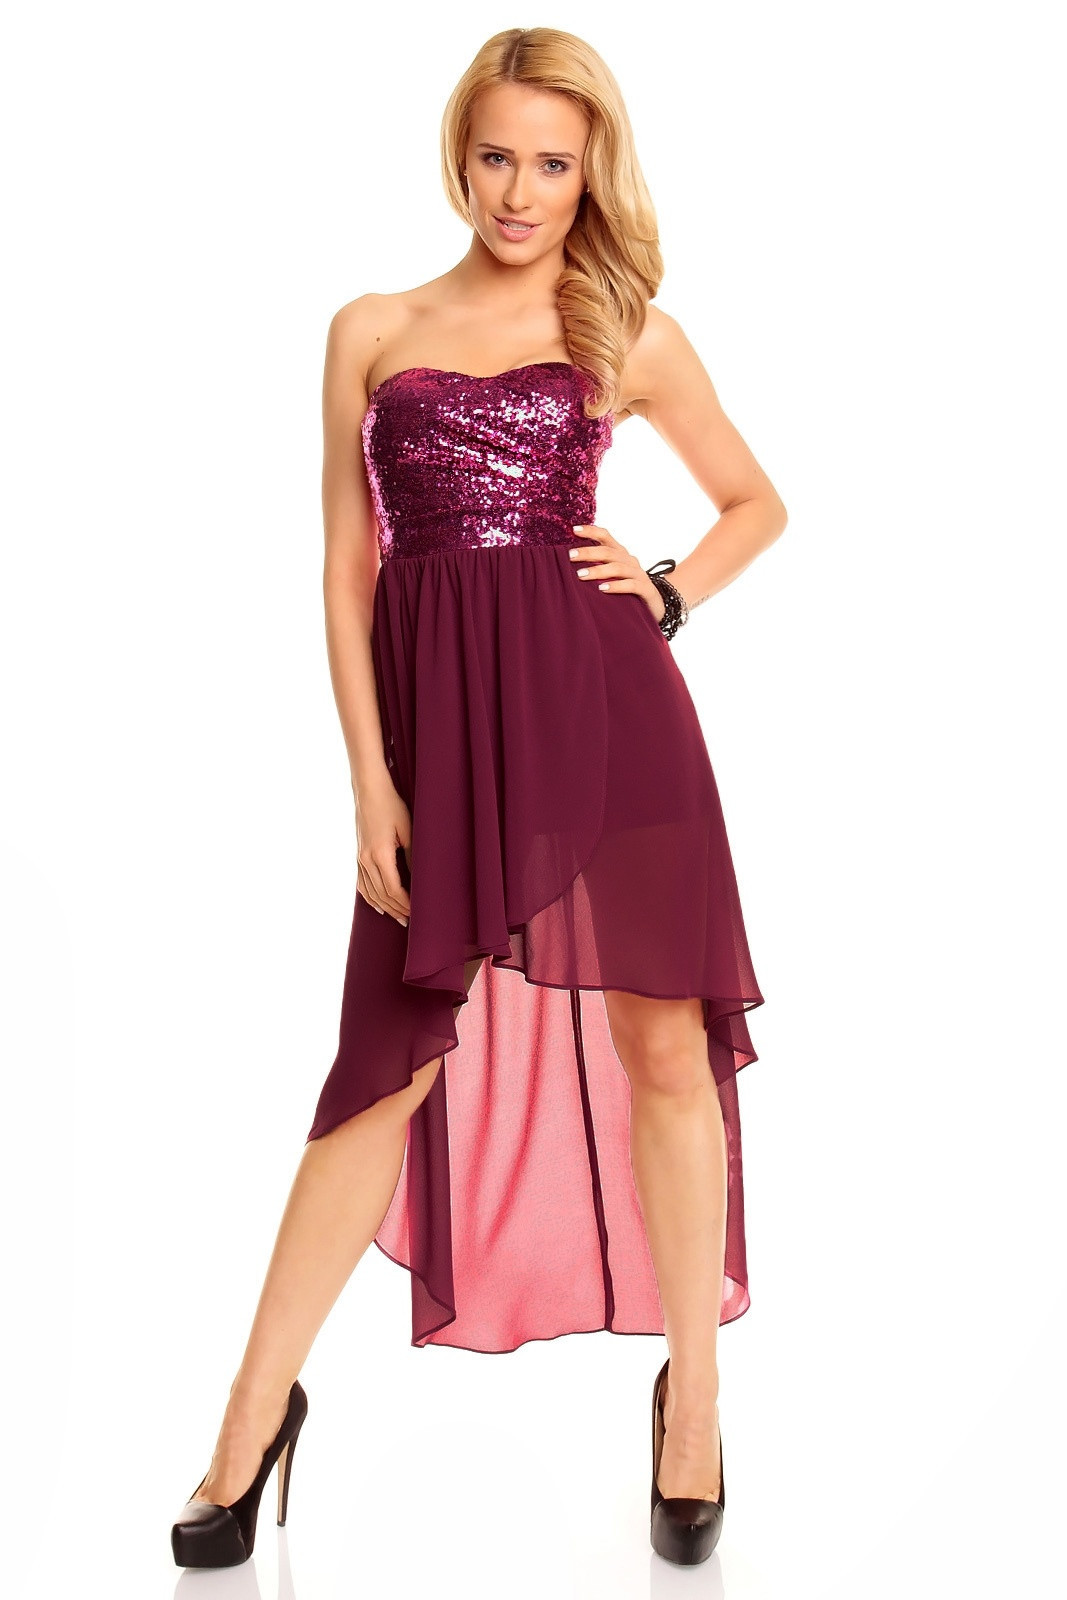 Dámské společenské šaty korzetové MAYAADI s asymetrickou sukní fialové - Fialová - MAYAADI XL